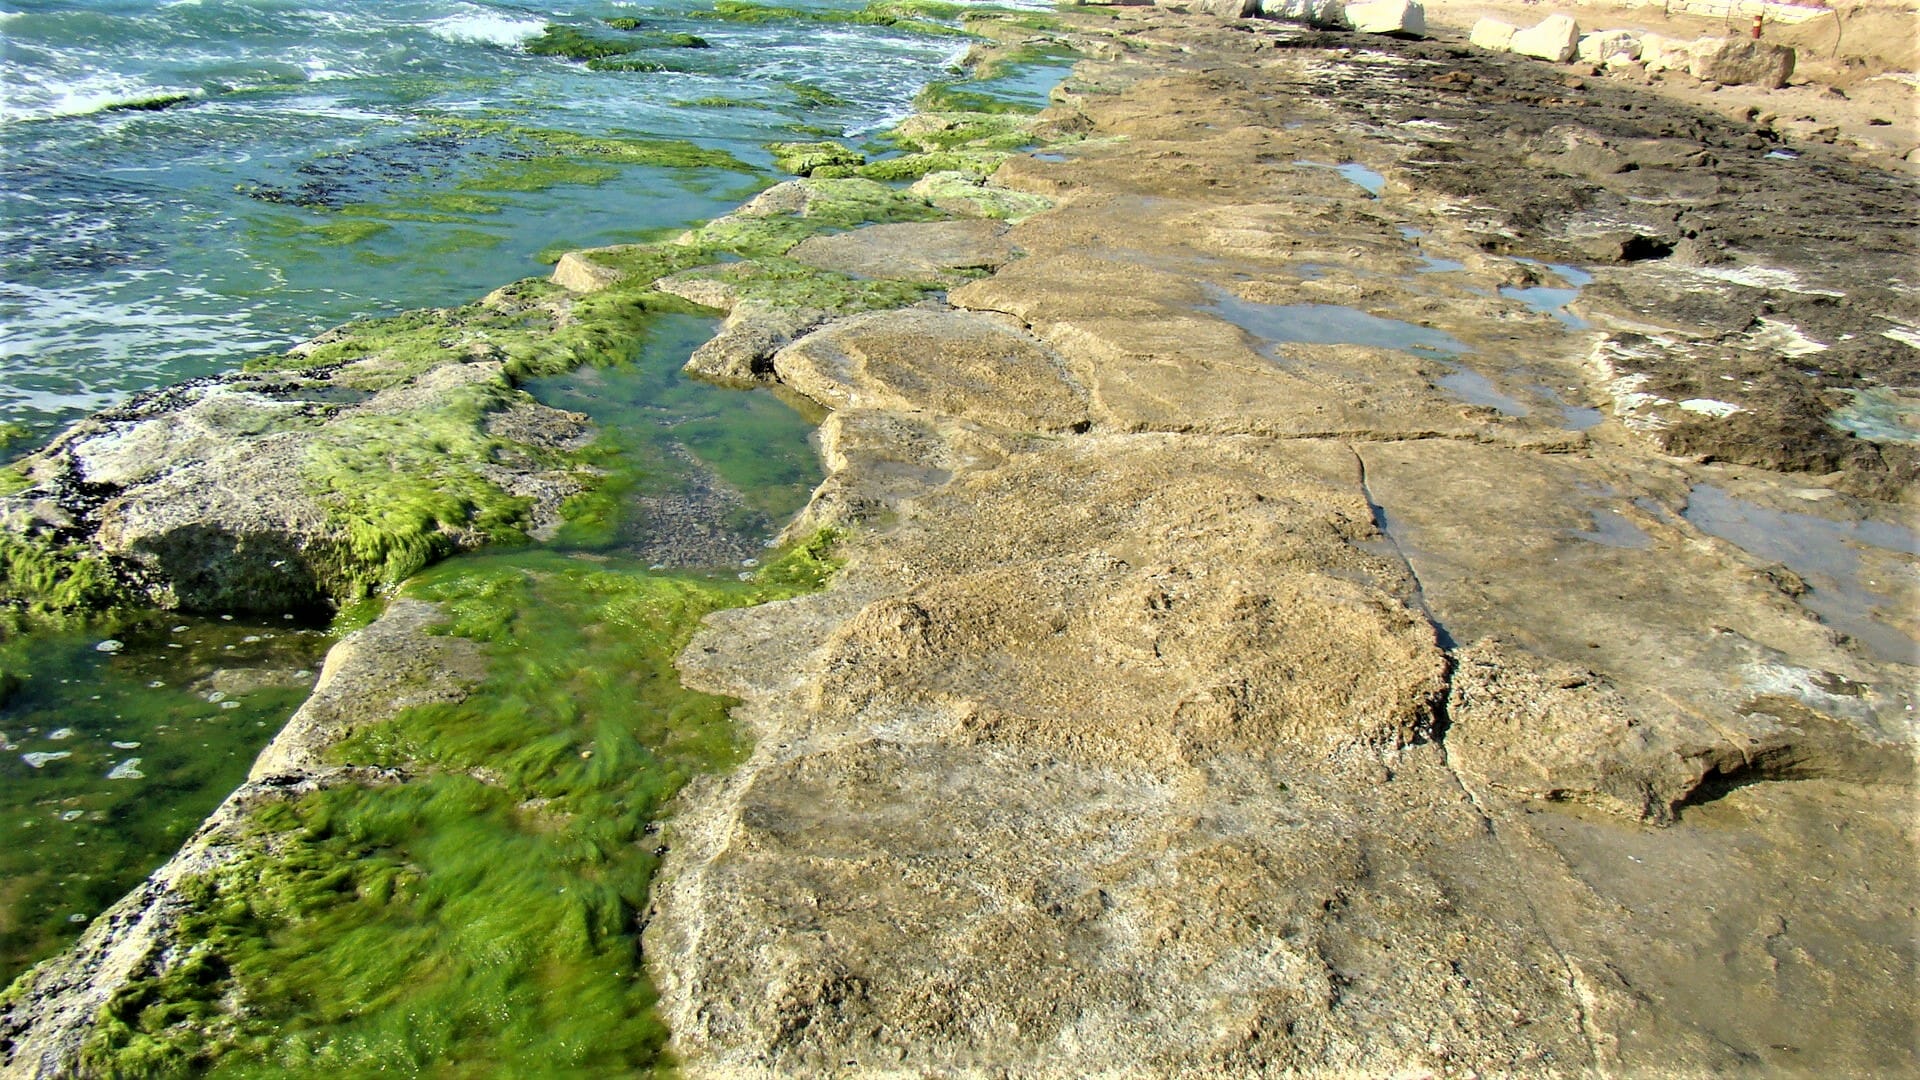 אצה ירוקייה - פרשדונית, חוף תל-ברוך, לוחות גידוד באזור הכרית, צילום: ד"ר ענת אביטל